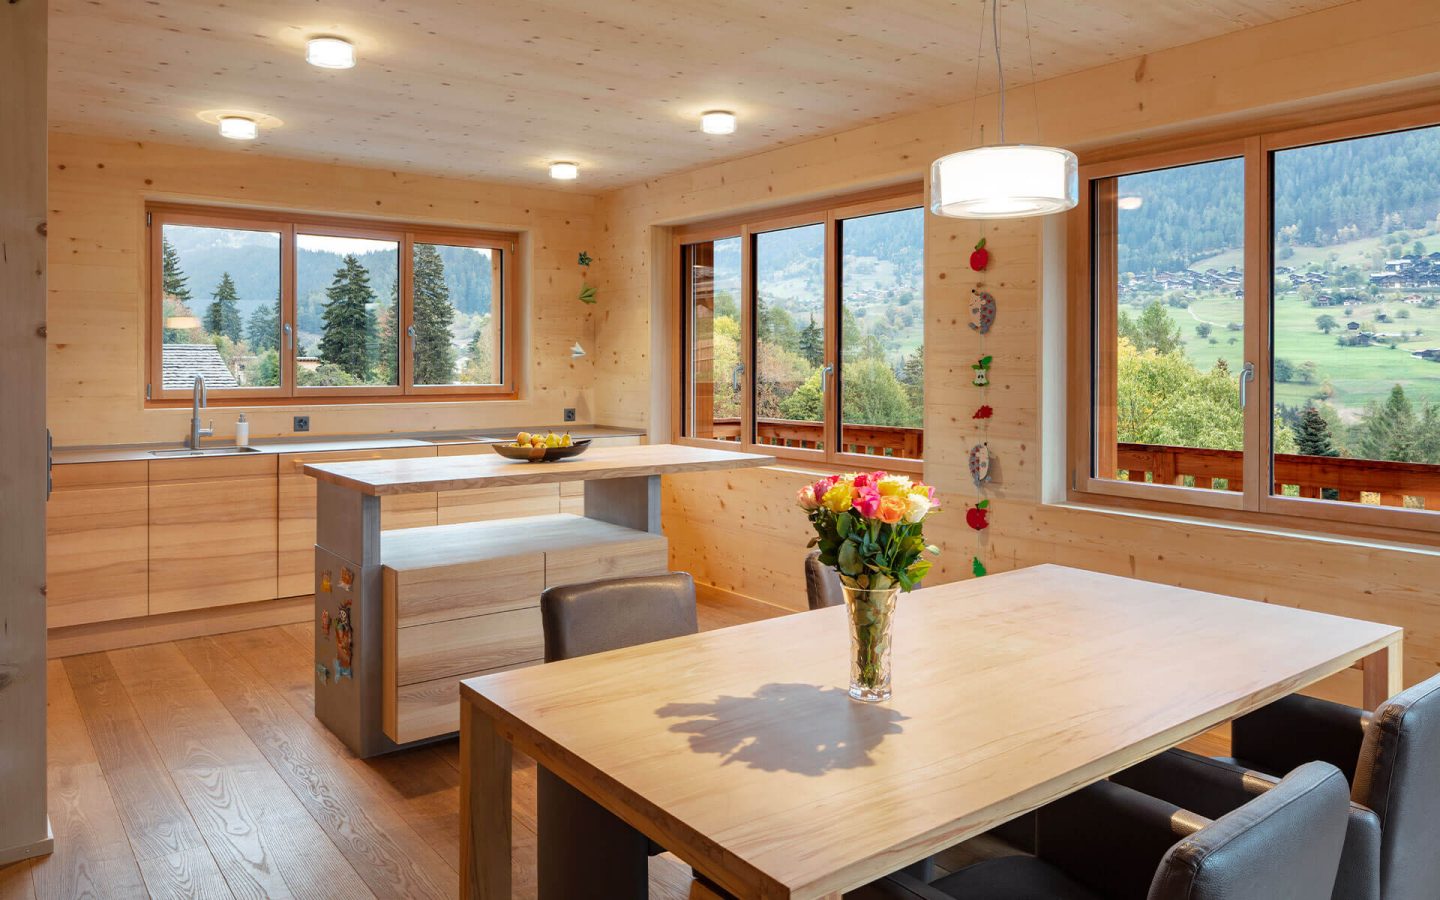 Linee pulite, ambienti luminosi e soffitti alti conferiscono leggerezza alle case realizzate interamente in legno.